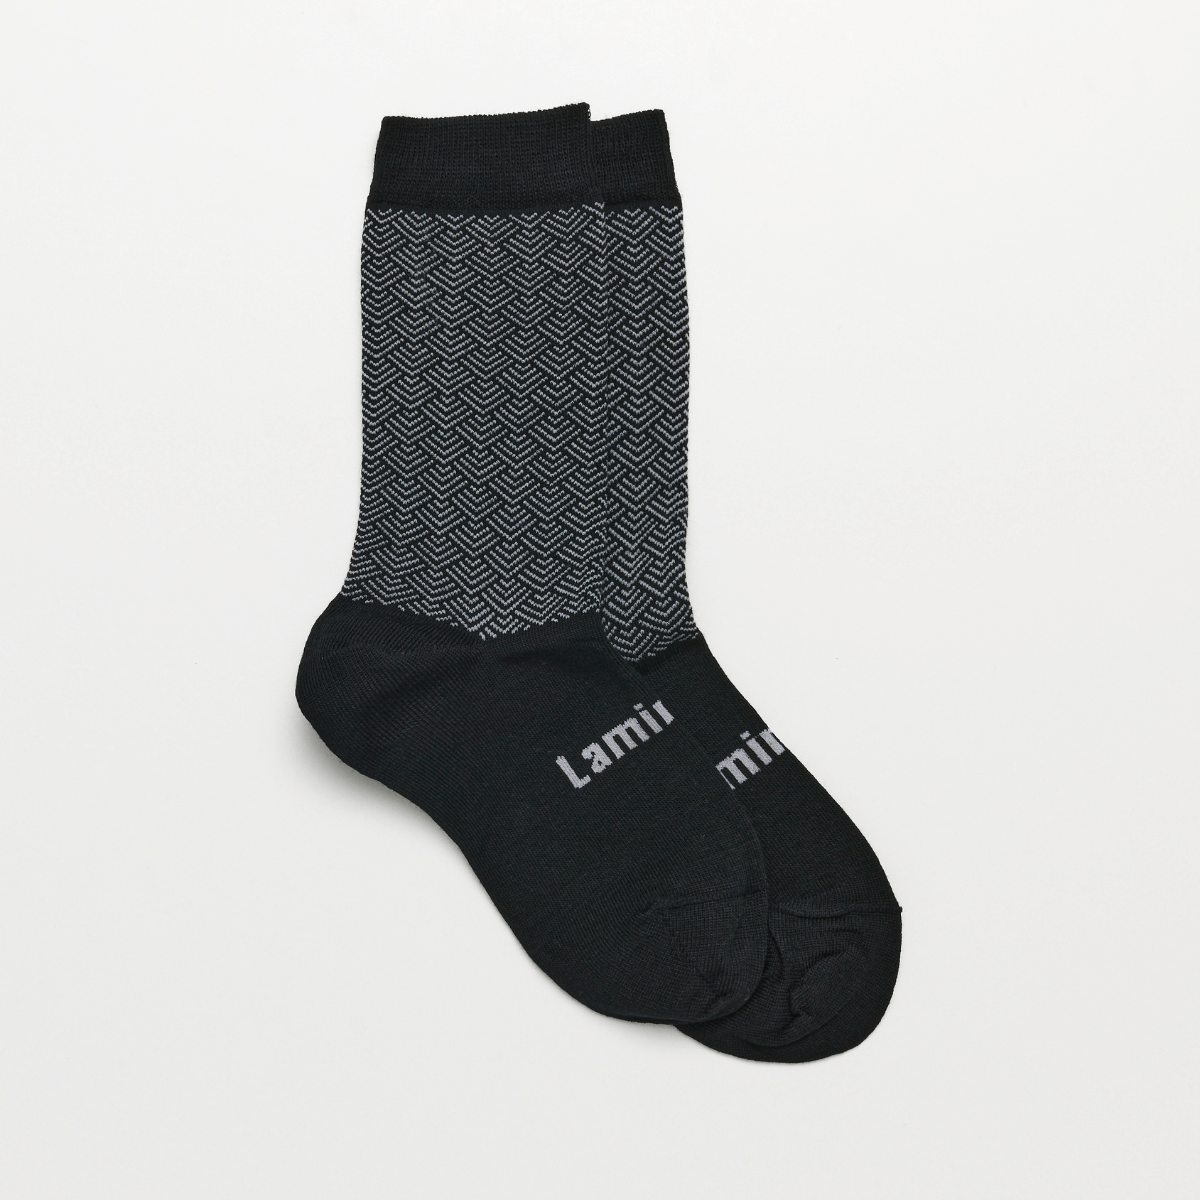 merino wool socks child black and grey